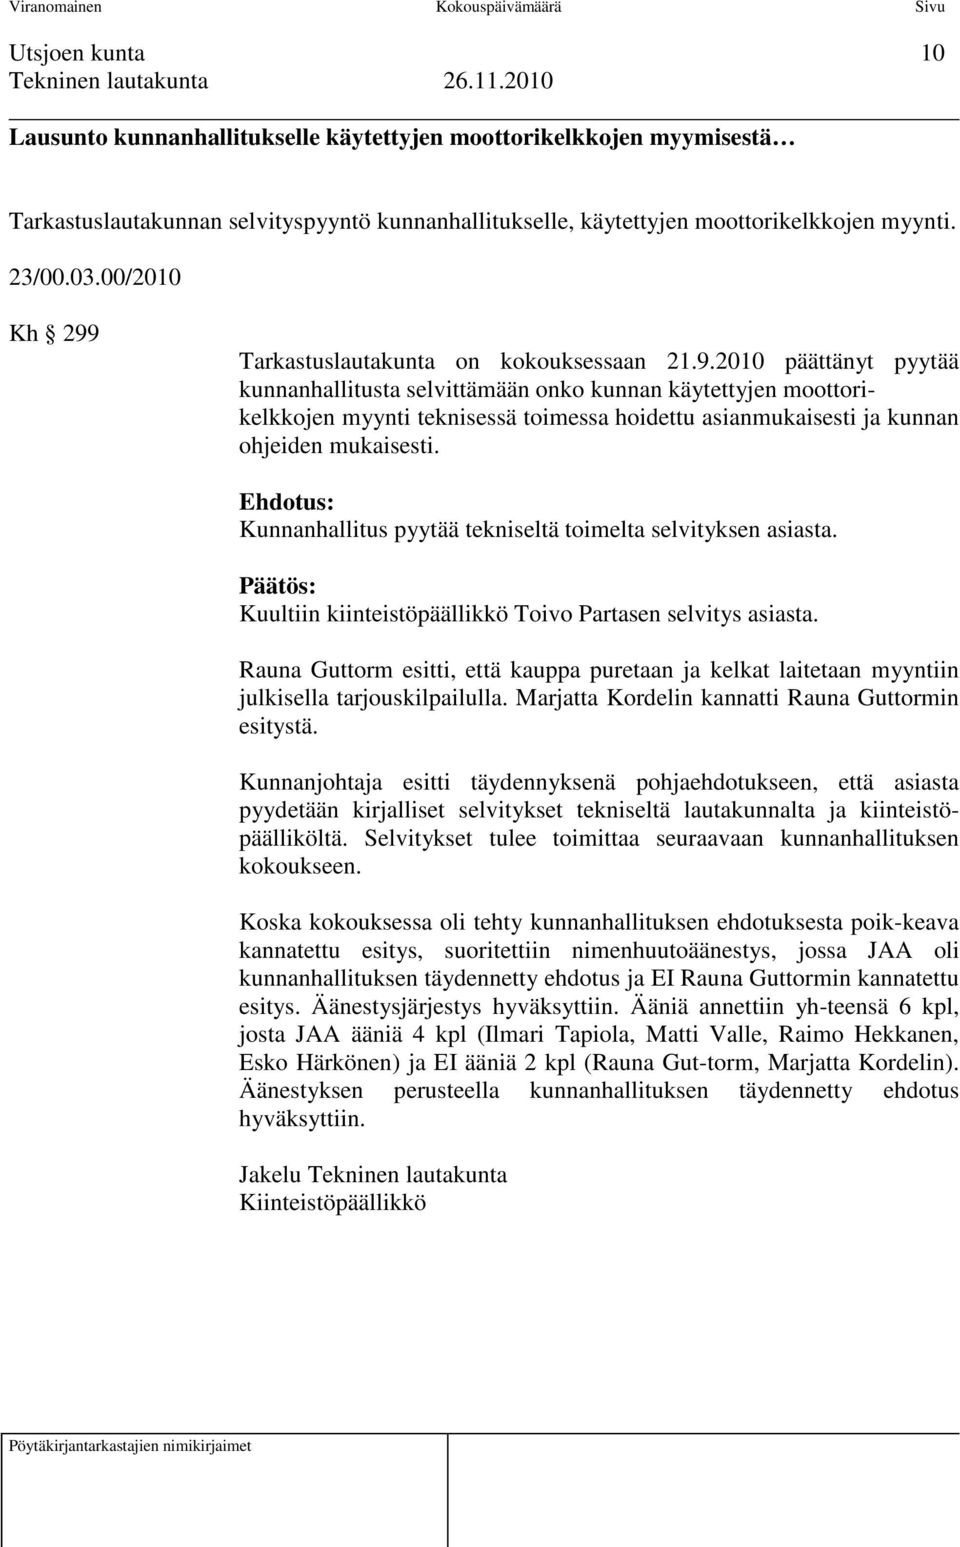 Ehdotus: Kunnanhallitus pyytää tekniseltä toimelta selvityksen asiasta. Päätös: Kuultiin kiinteistöpäällikkö Toivo Partasen selvitys asiasta.